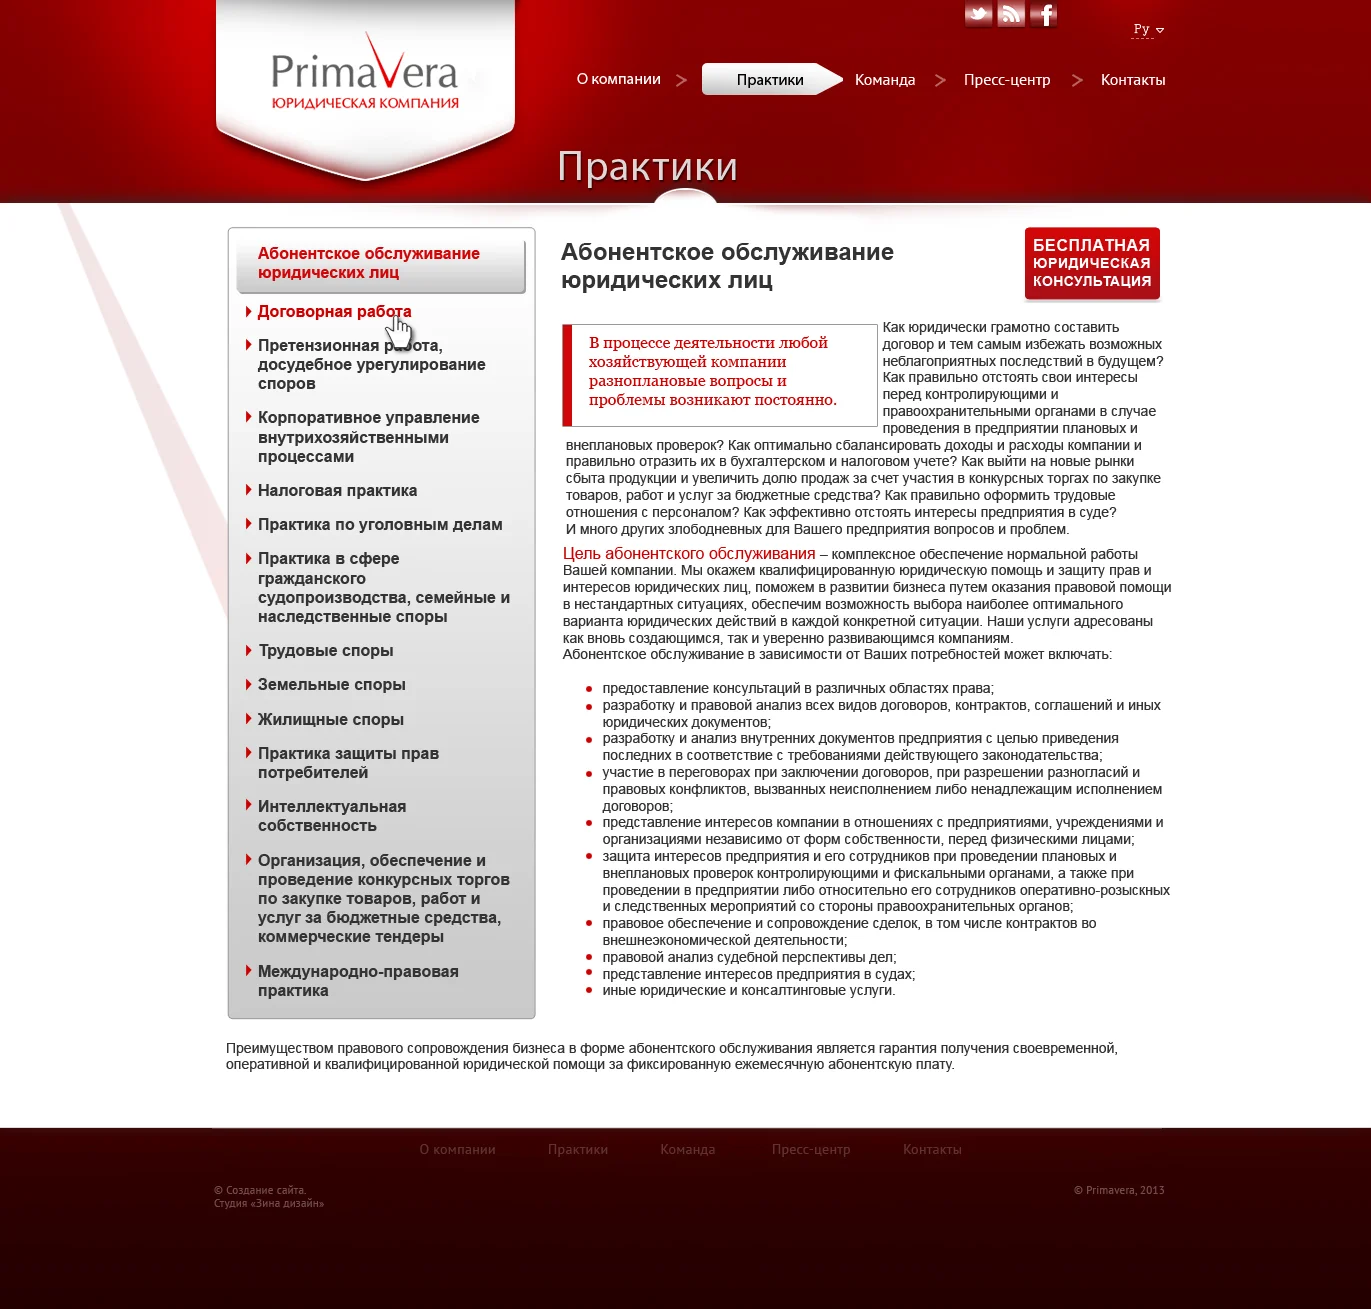 Дизайн сайта юридической компании «Primavera» - Раздел «Практики» (2)